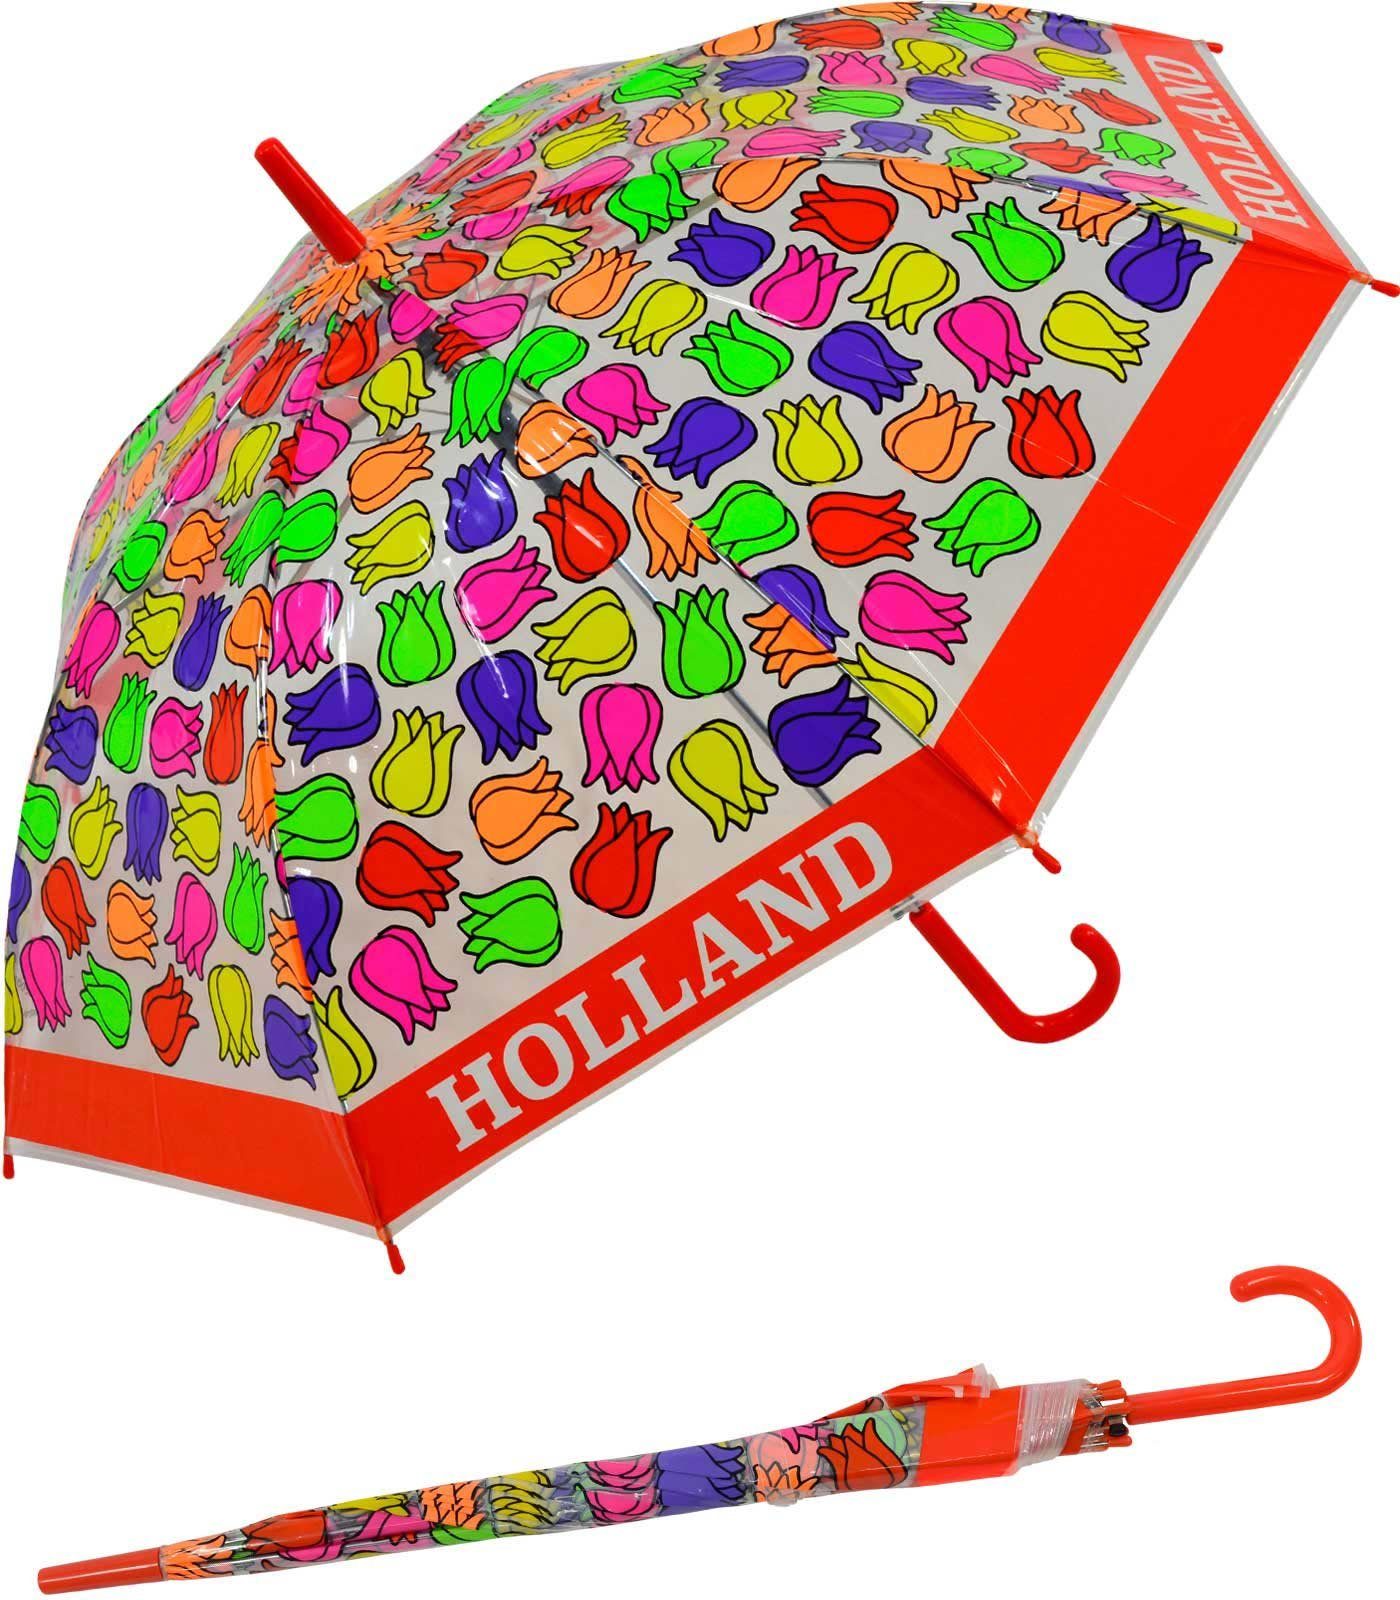 [Die neuesten Artikel im Ausland kaufen] Impliva Langregenschirm Falconetti Kinderschirm bunt durchsichtig transparent Tulpen, rot 